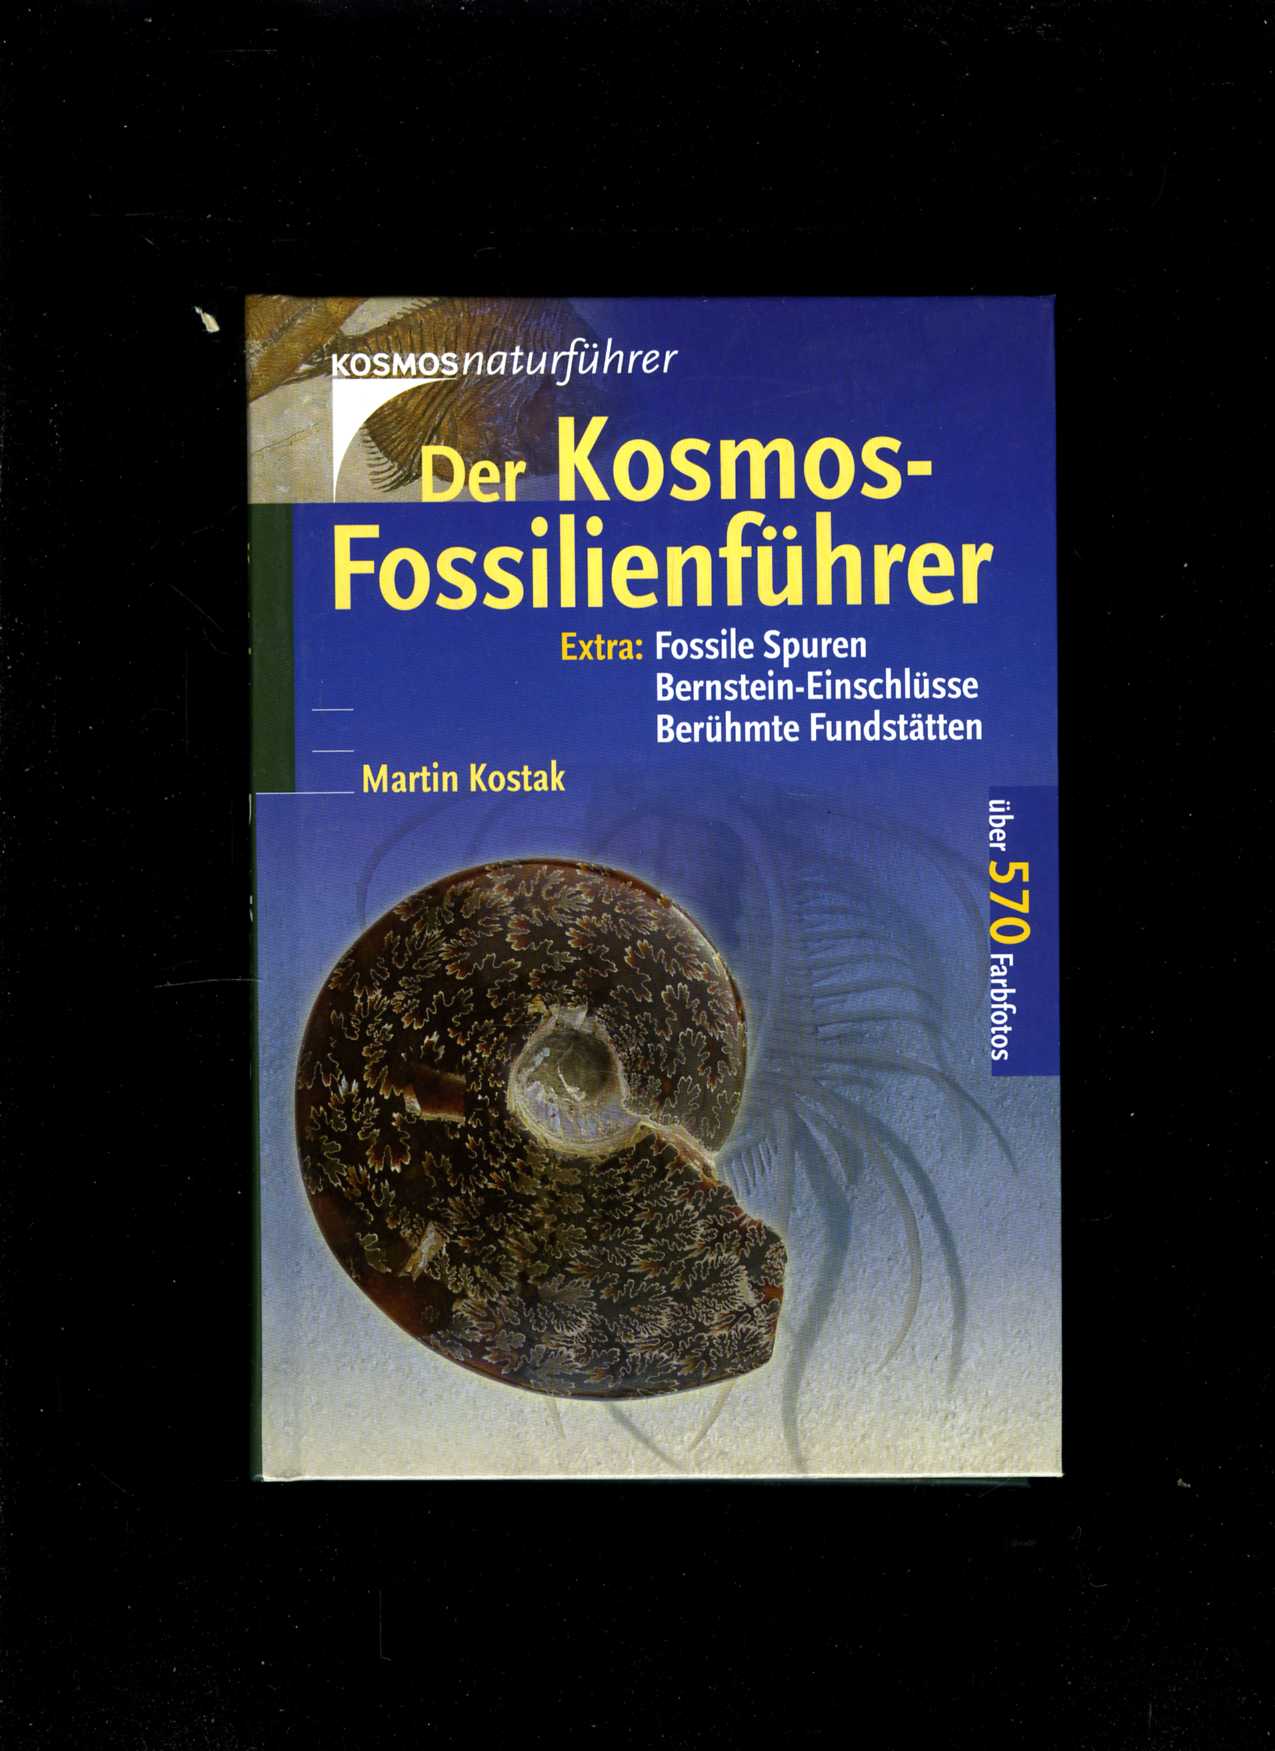 Der Kosmos-Fossilienführer